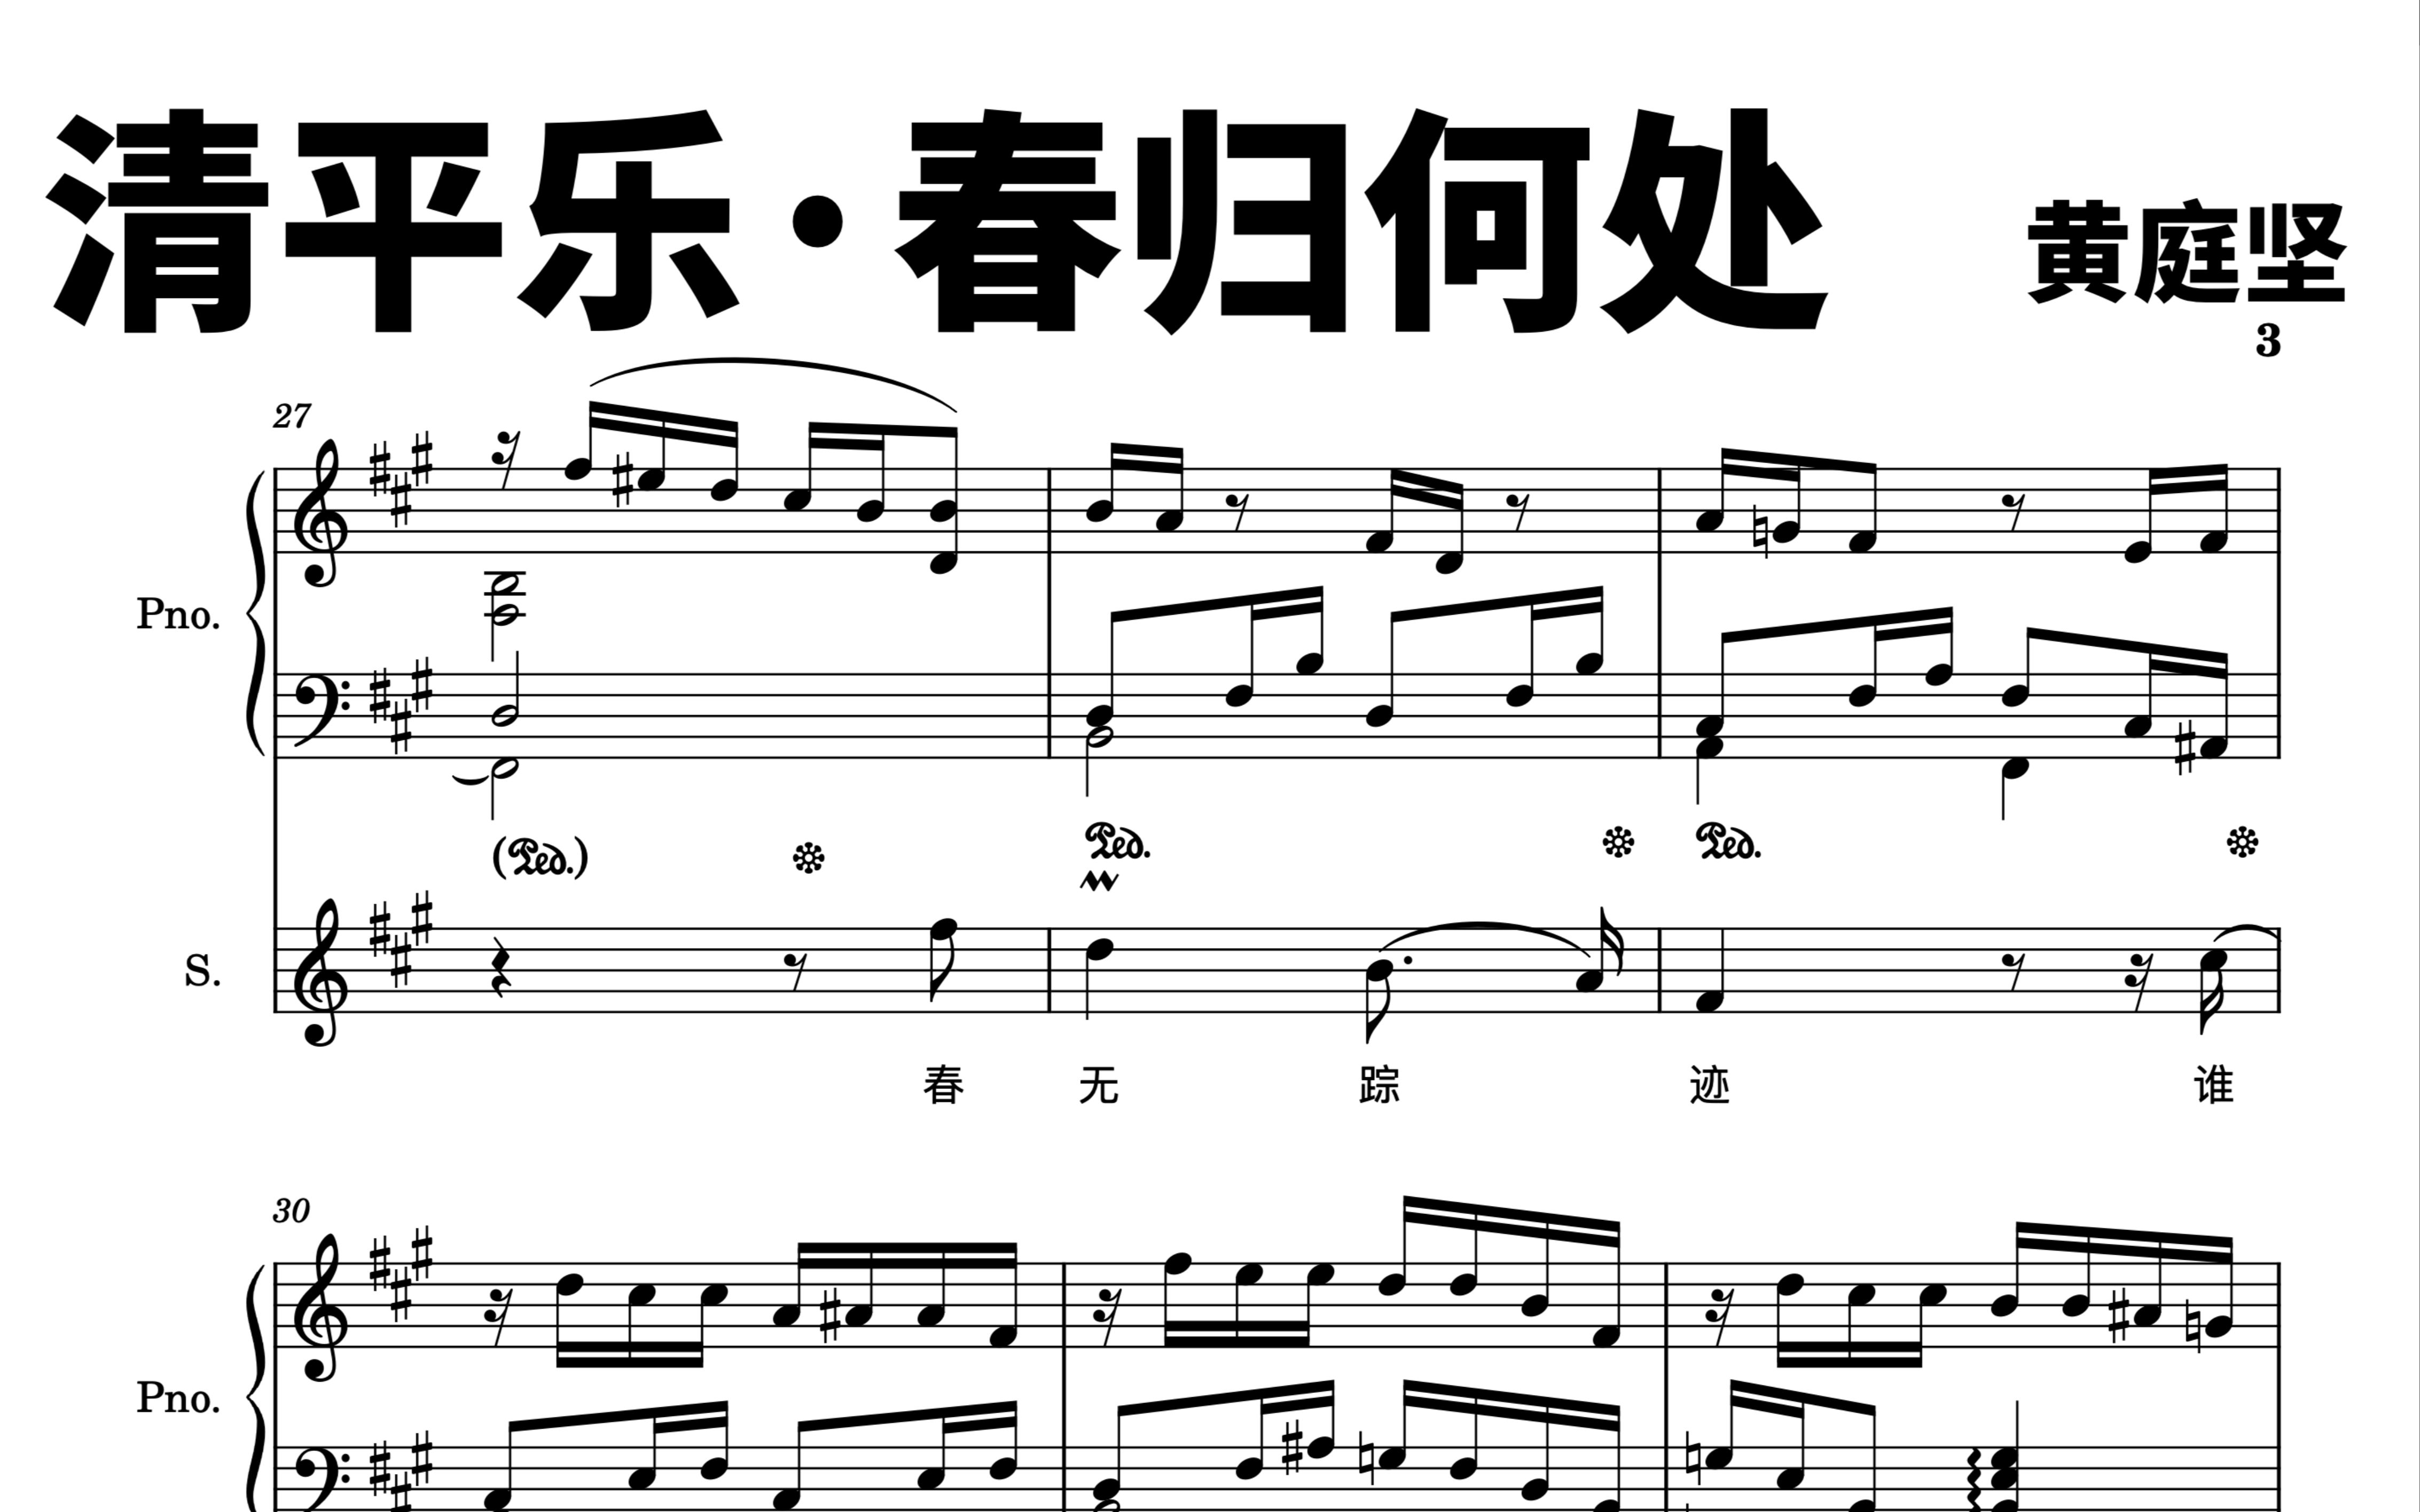 艺术歌曲《清平乐·春归何处》为女高音和钢琴所作 很久没有发作品了